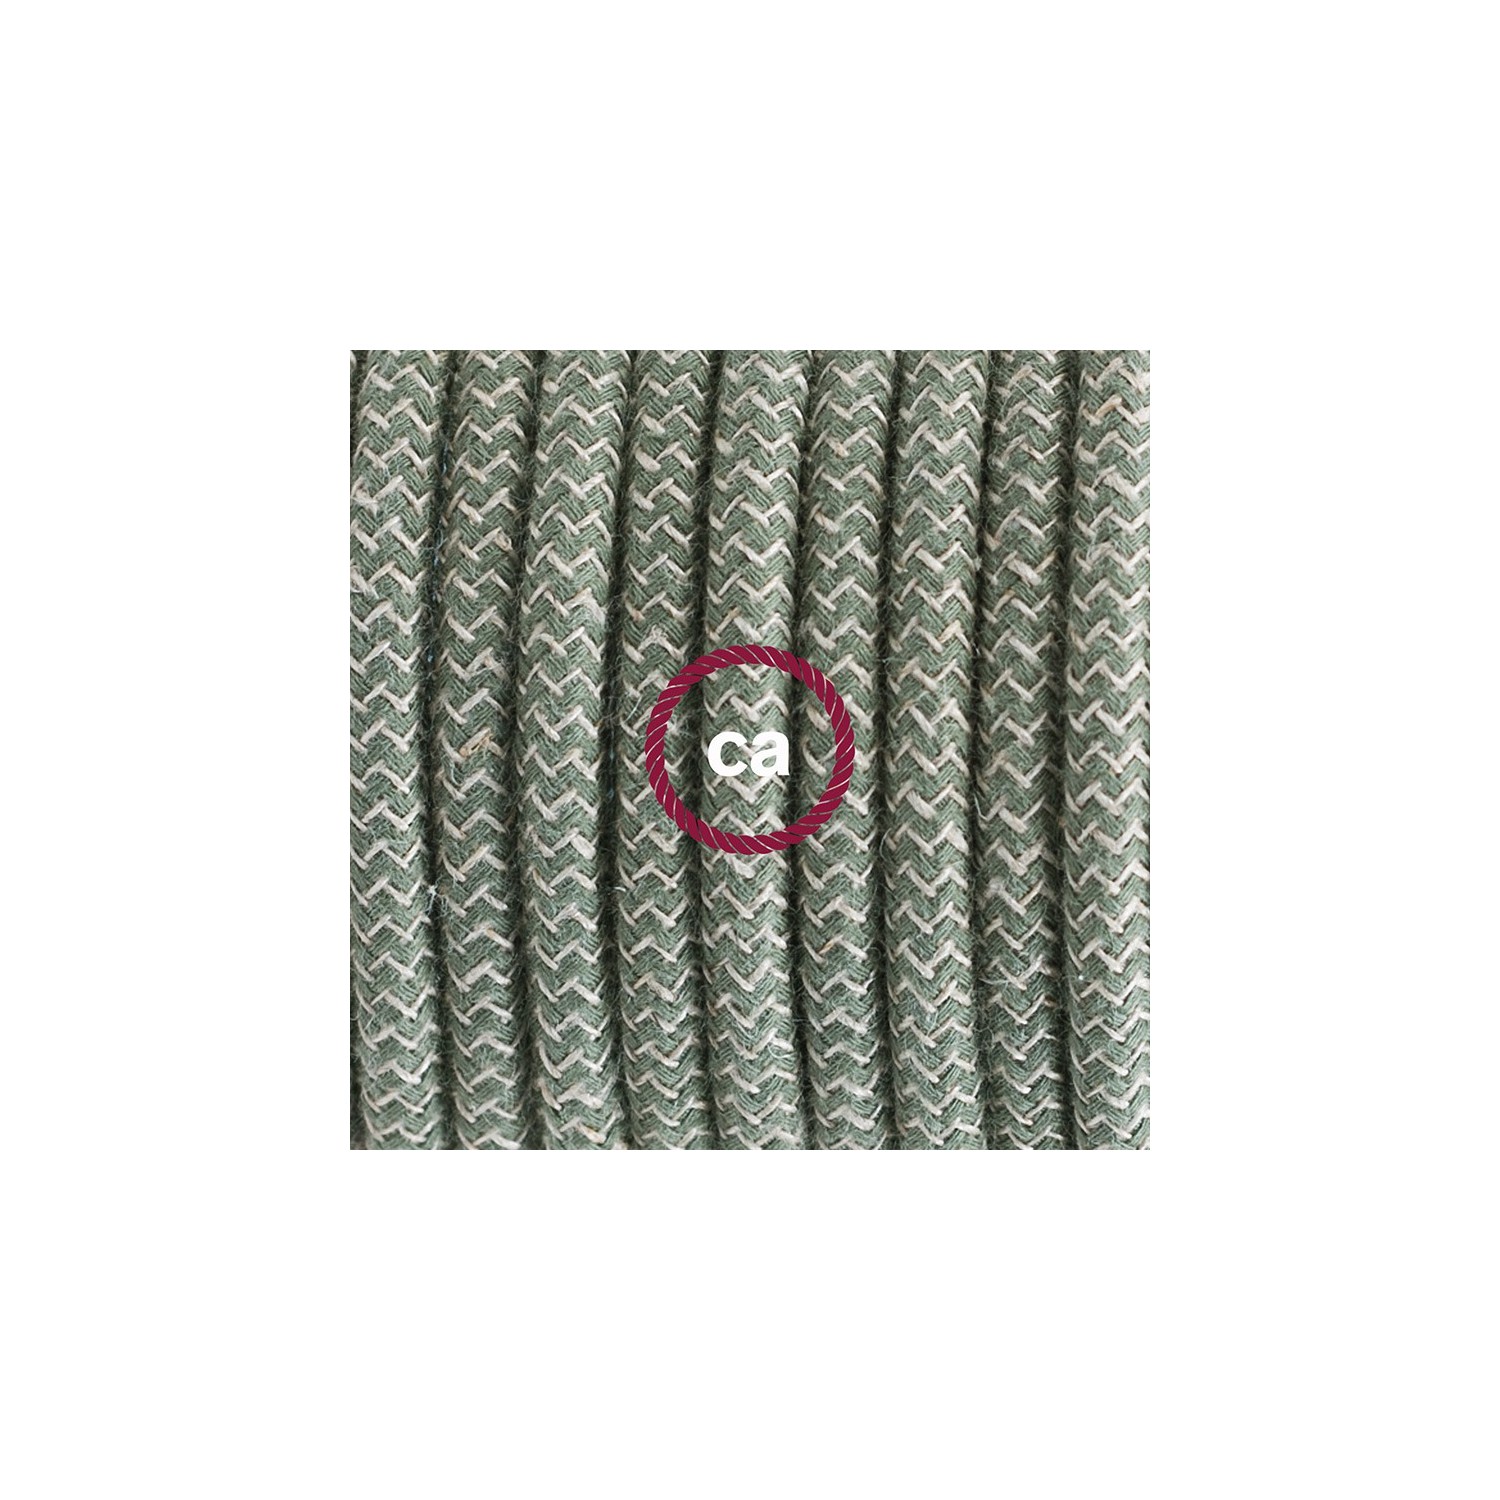 Ronde flexibele textielkabel van katoen en linnen met schakelaar en stekker. RD72 - zigzag groen tijm en linnen 1,80 m.